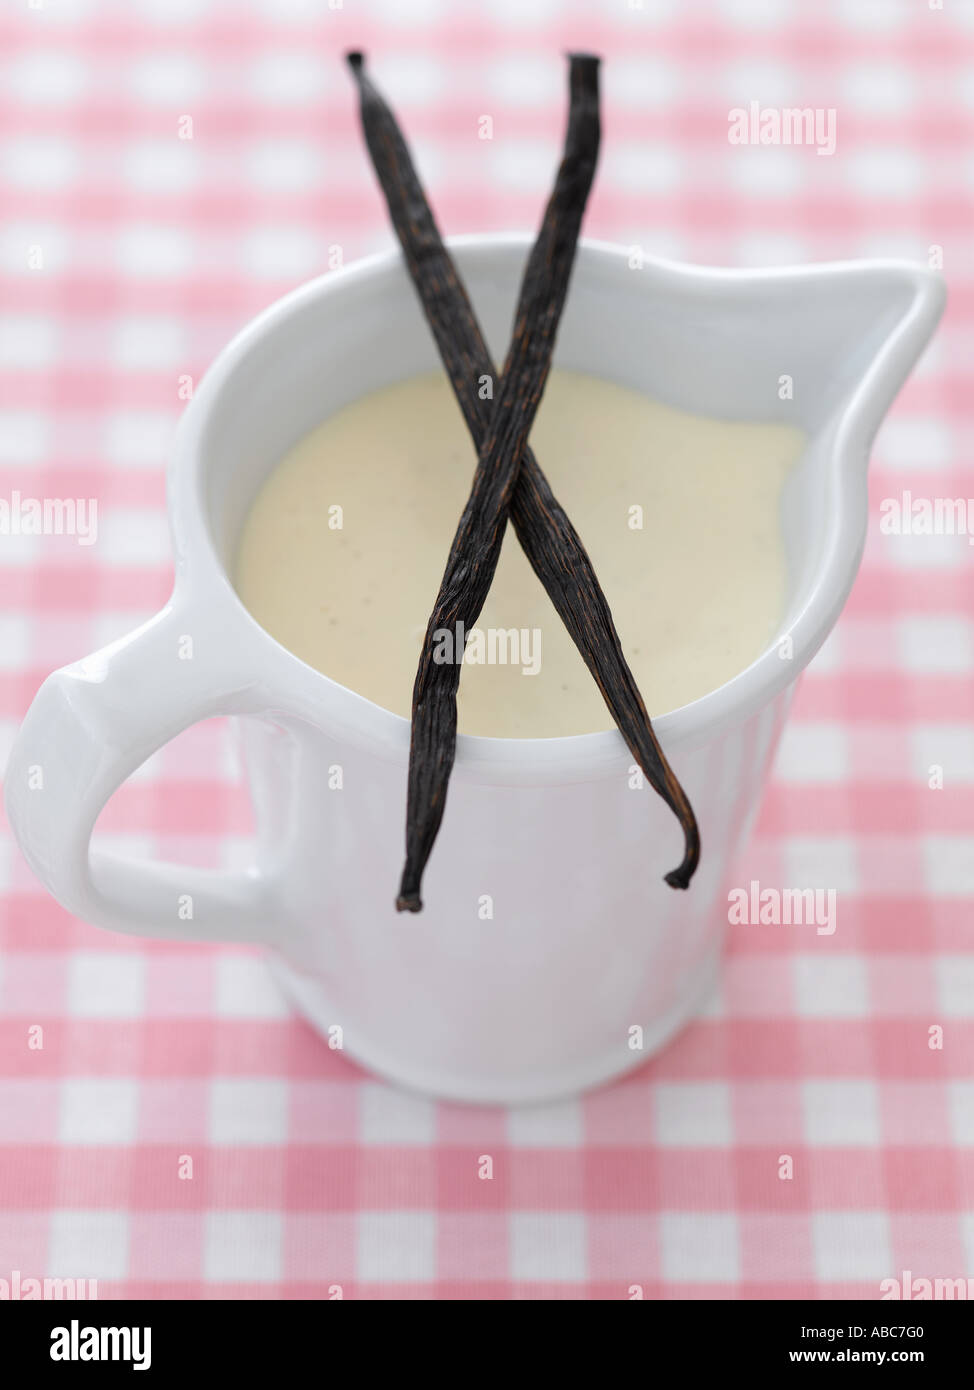 Crema pasticcera e baccelli di vaniglia su gingham rosa tovaglia - fascia alta Hasselblad 61mb di immagine digitale Foto Stock